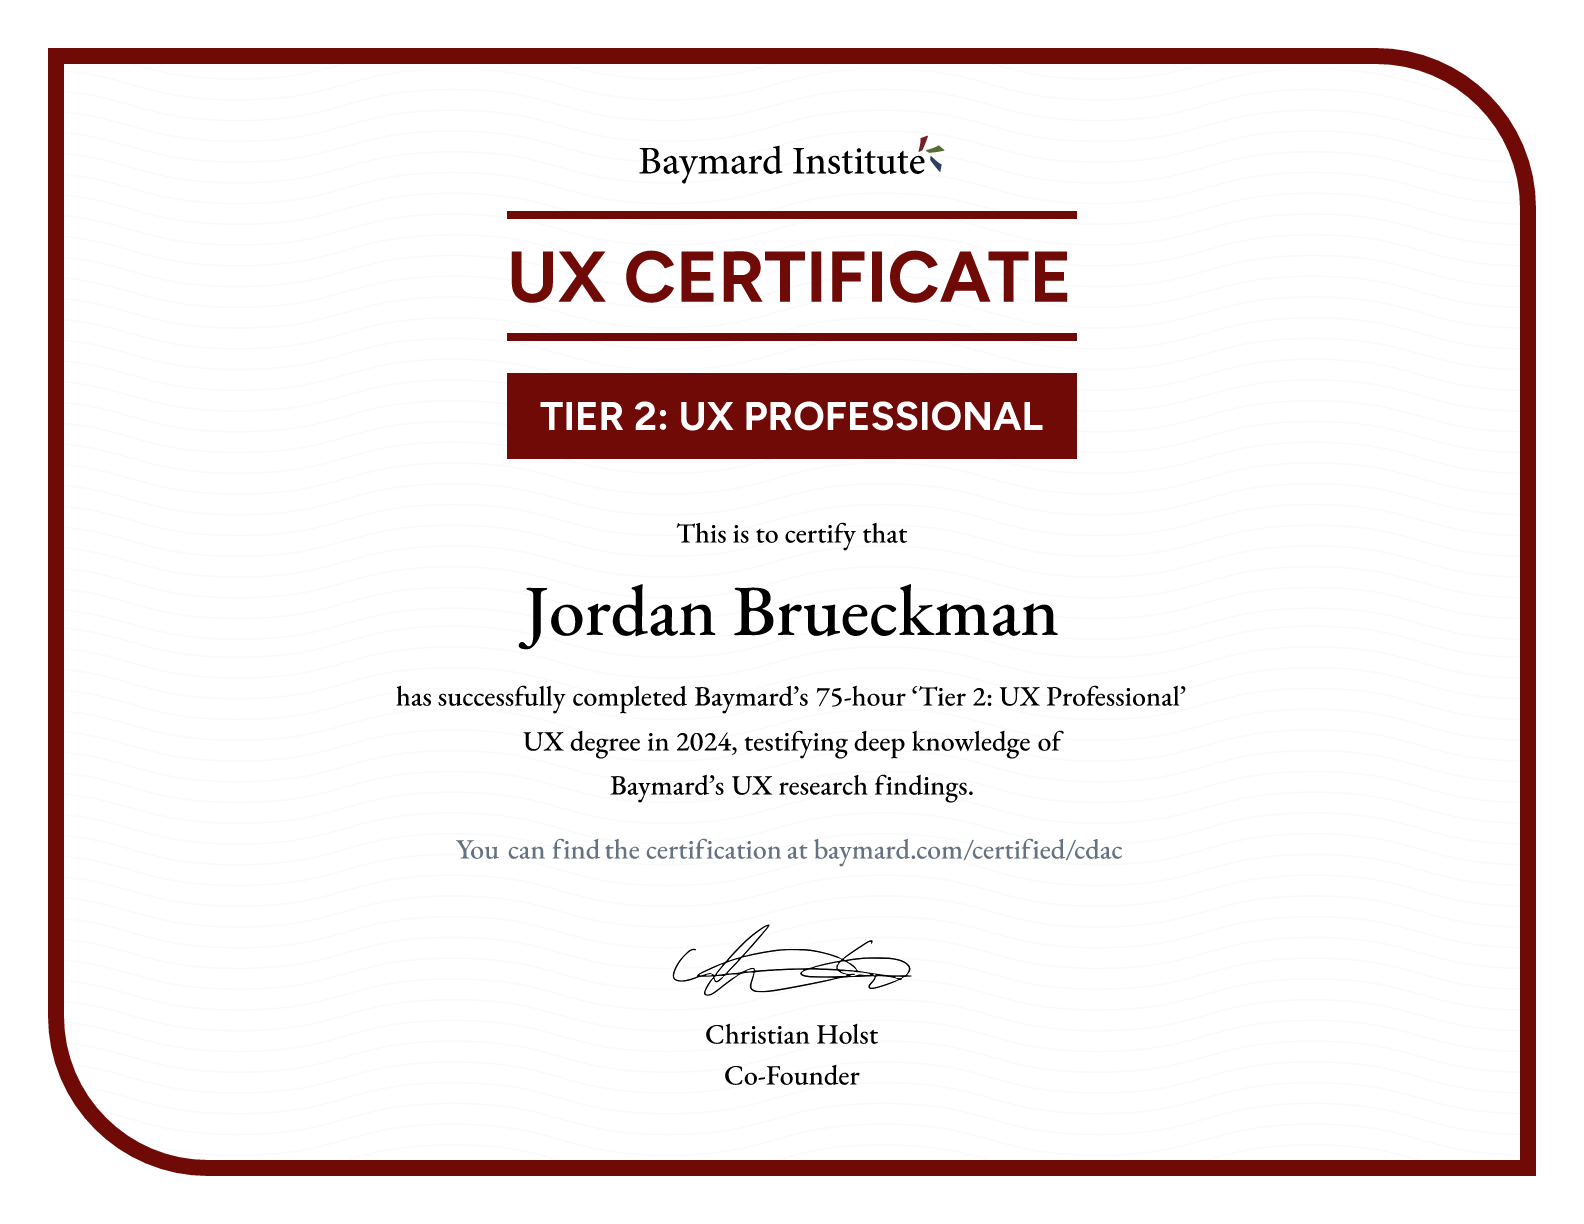 Jordan Brueckman’s certificate